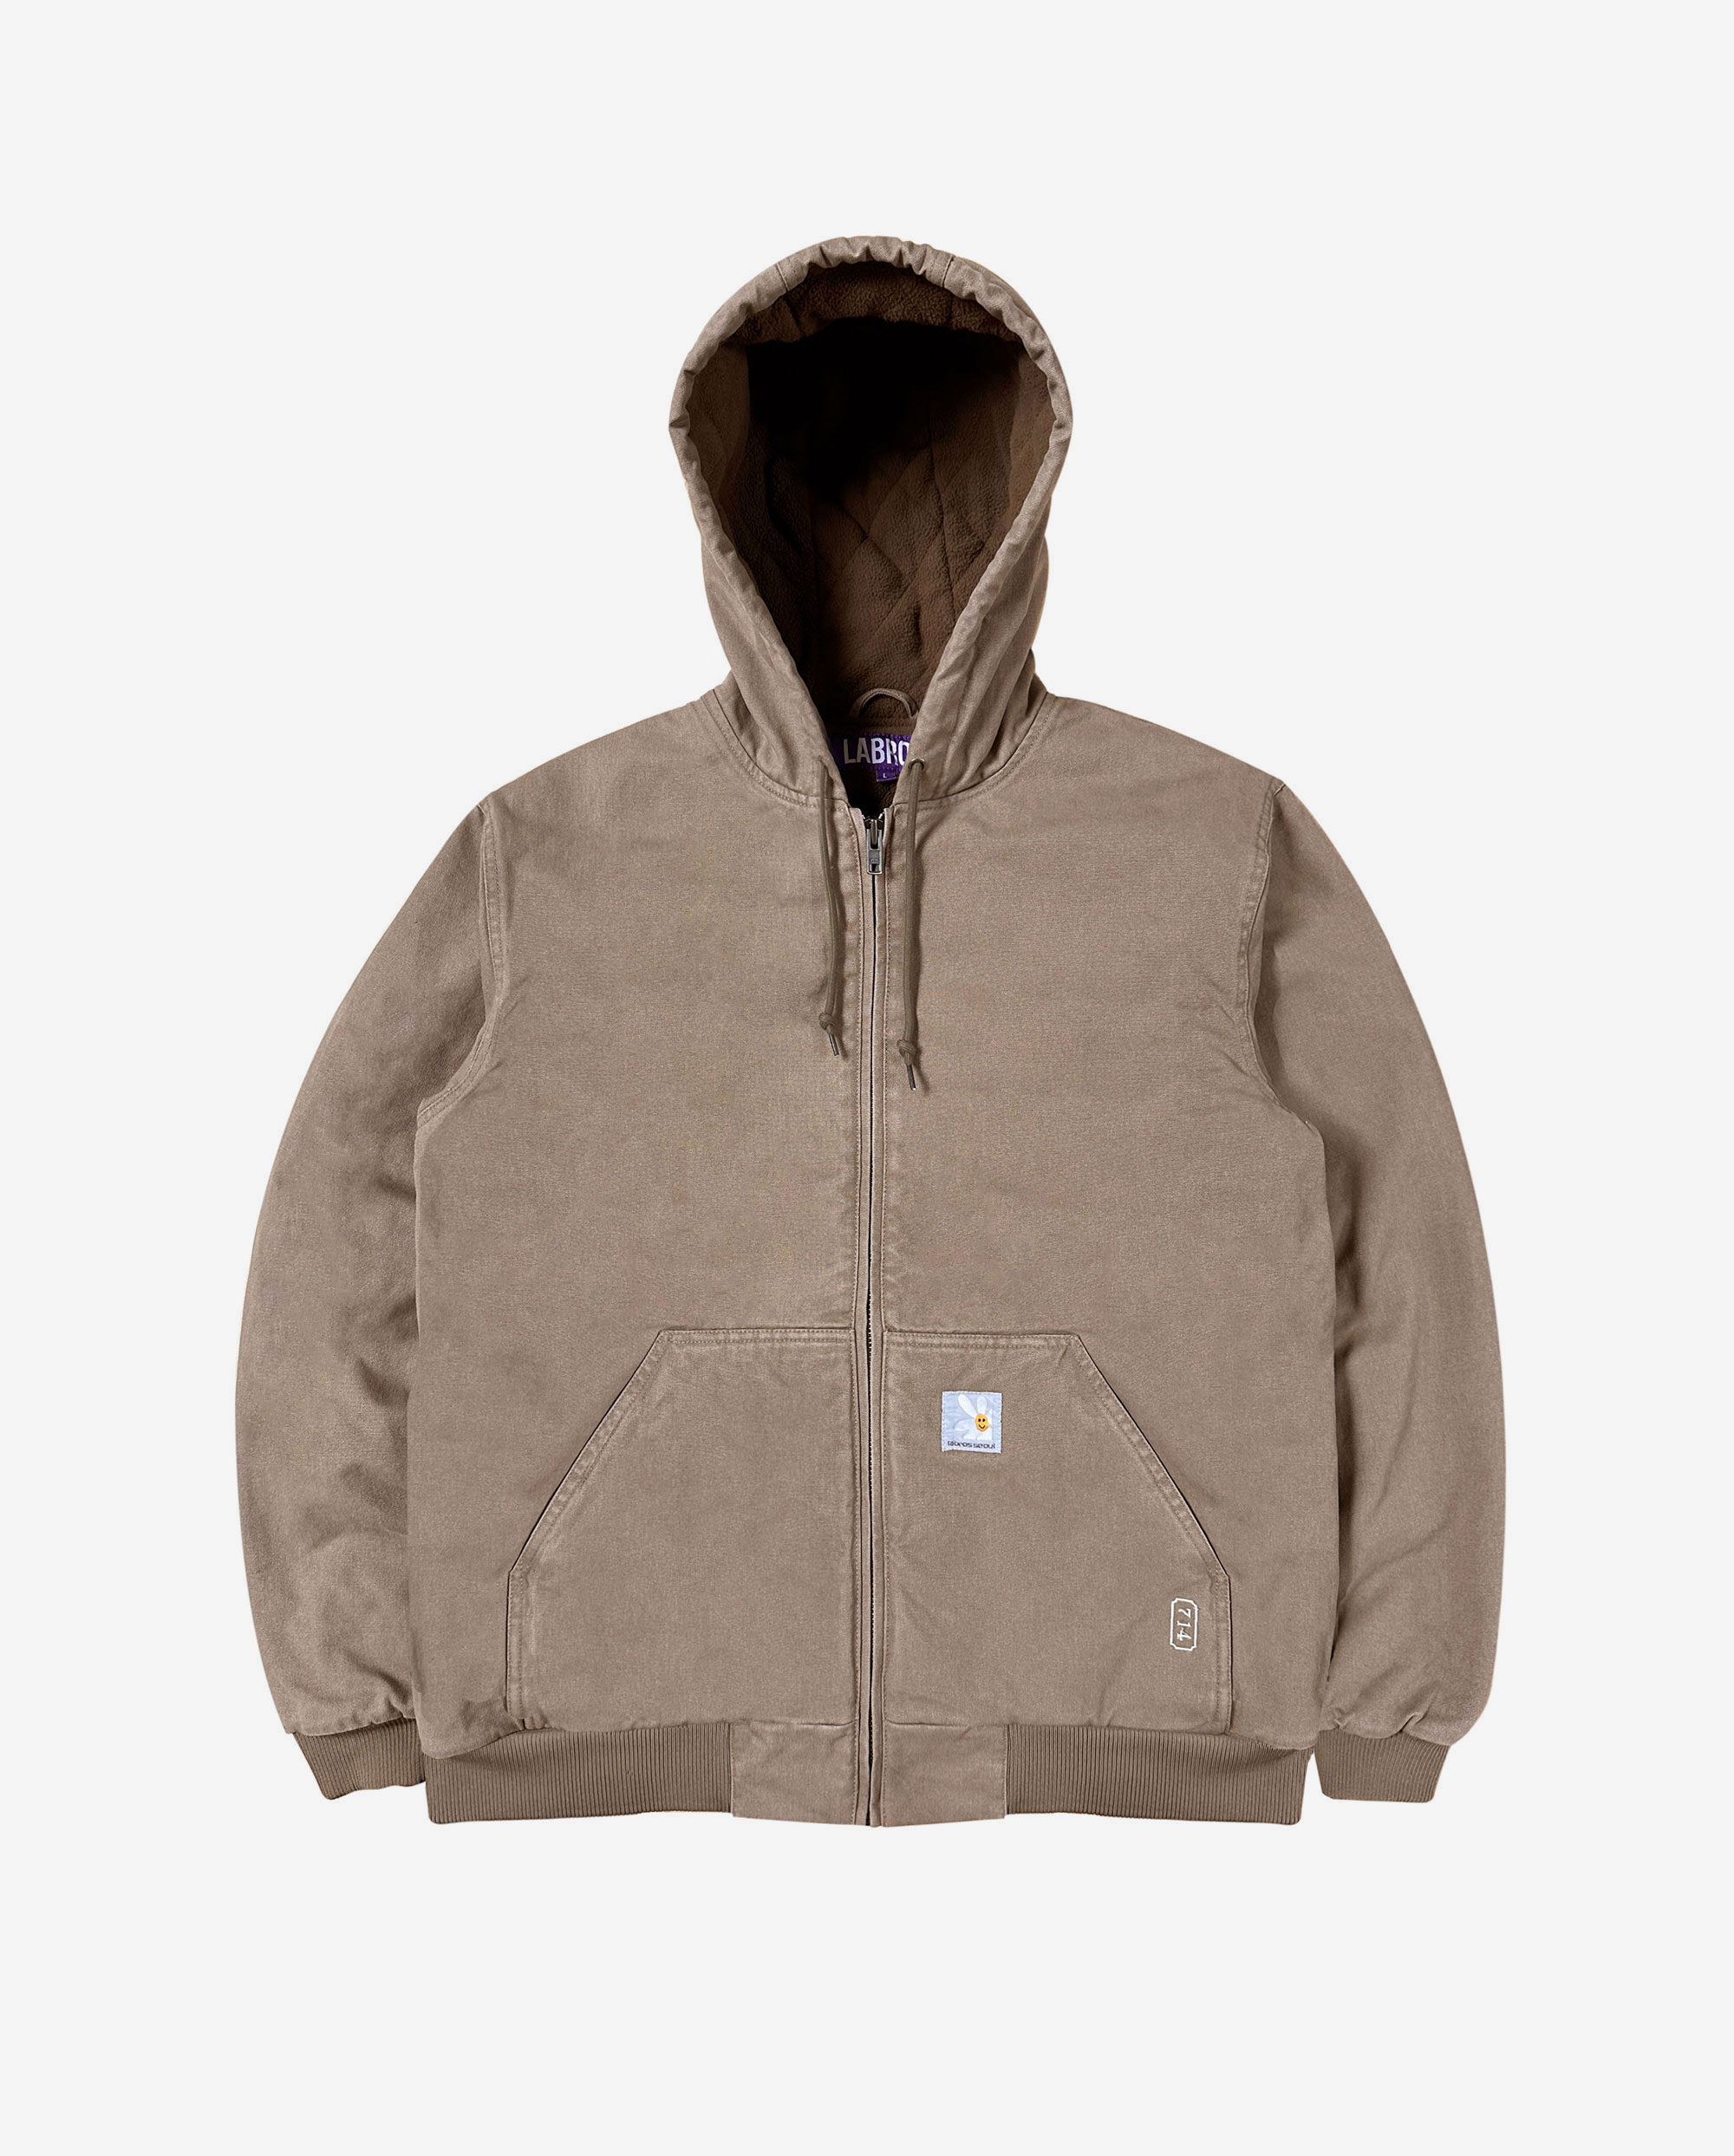 Trust Hooded Work Jacket (Brown)